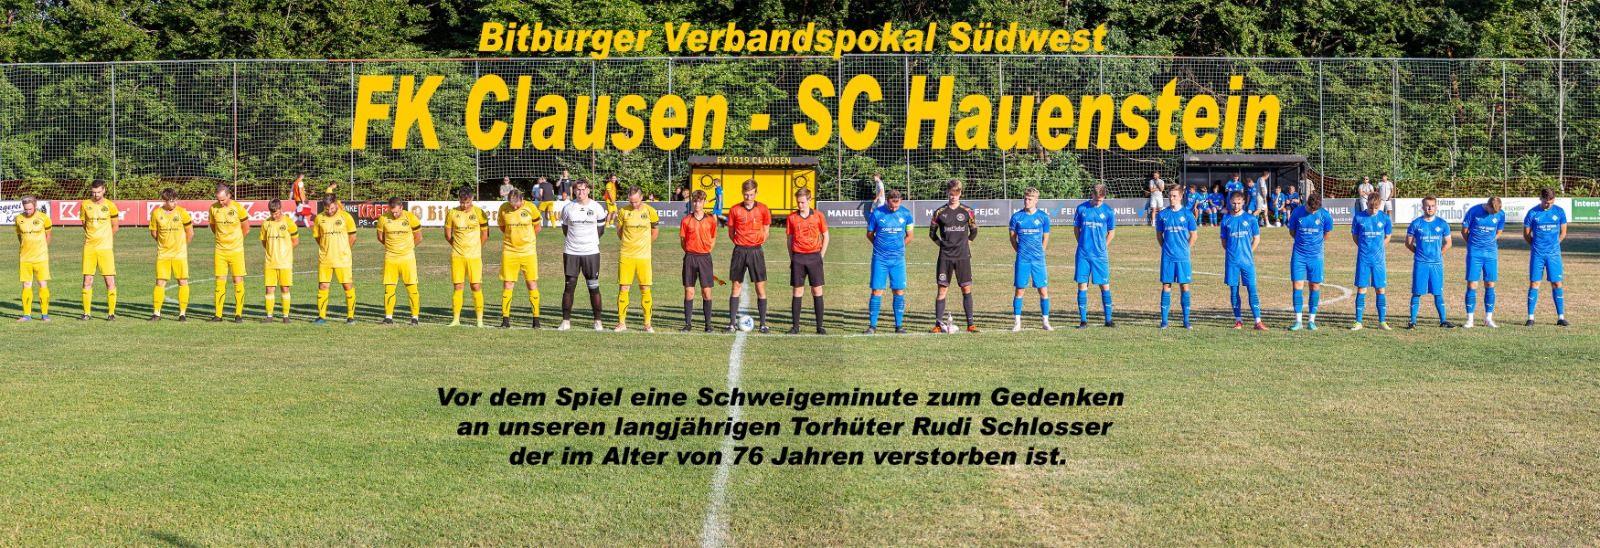 FK Clausen SC Hauenstein